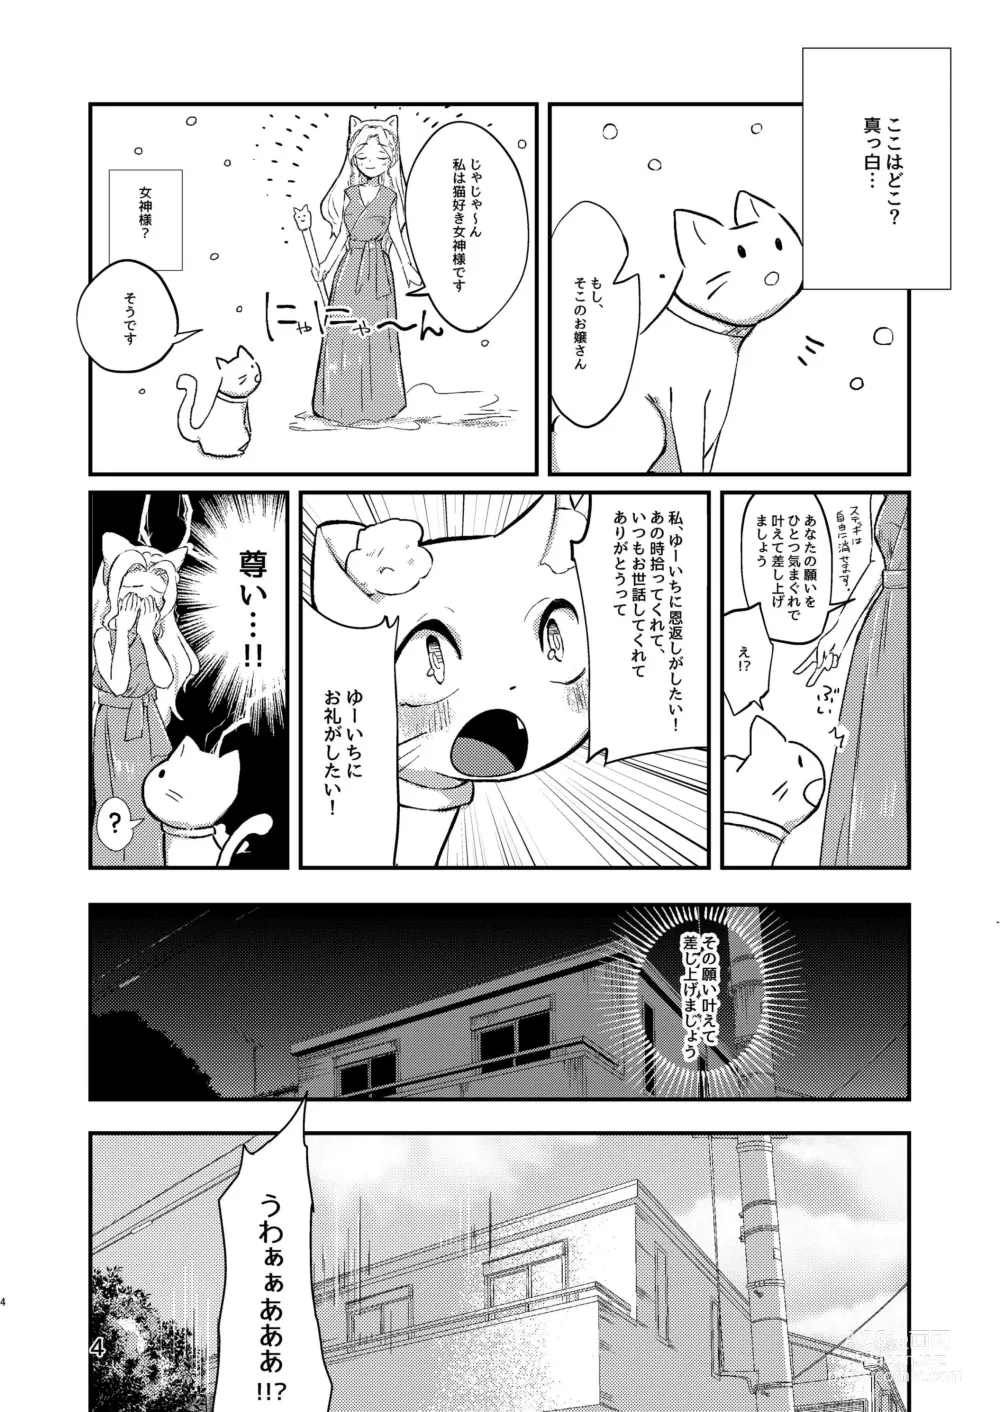 Page 3 of doujinshi Ongaeshi no Neko